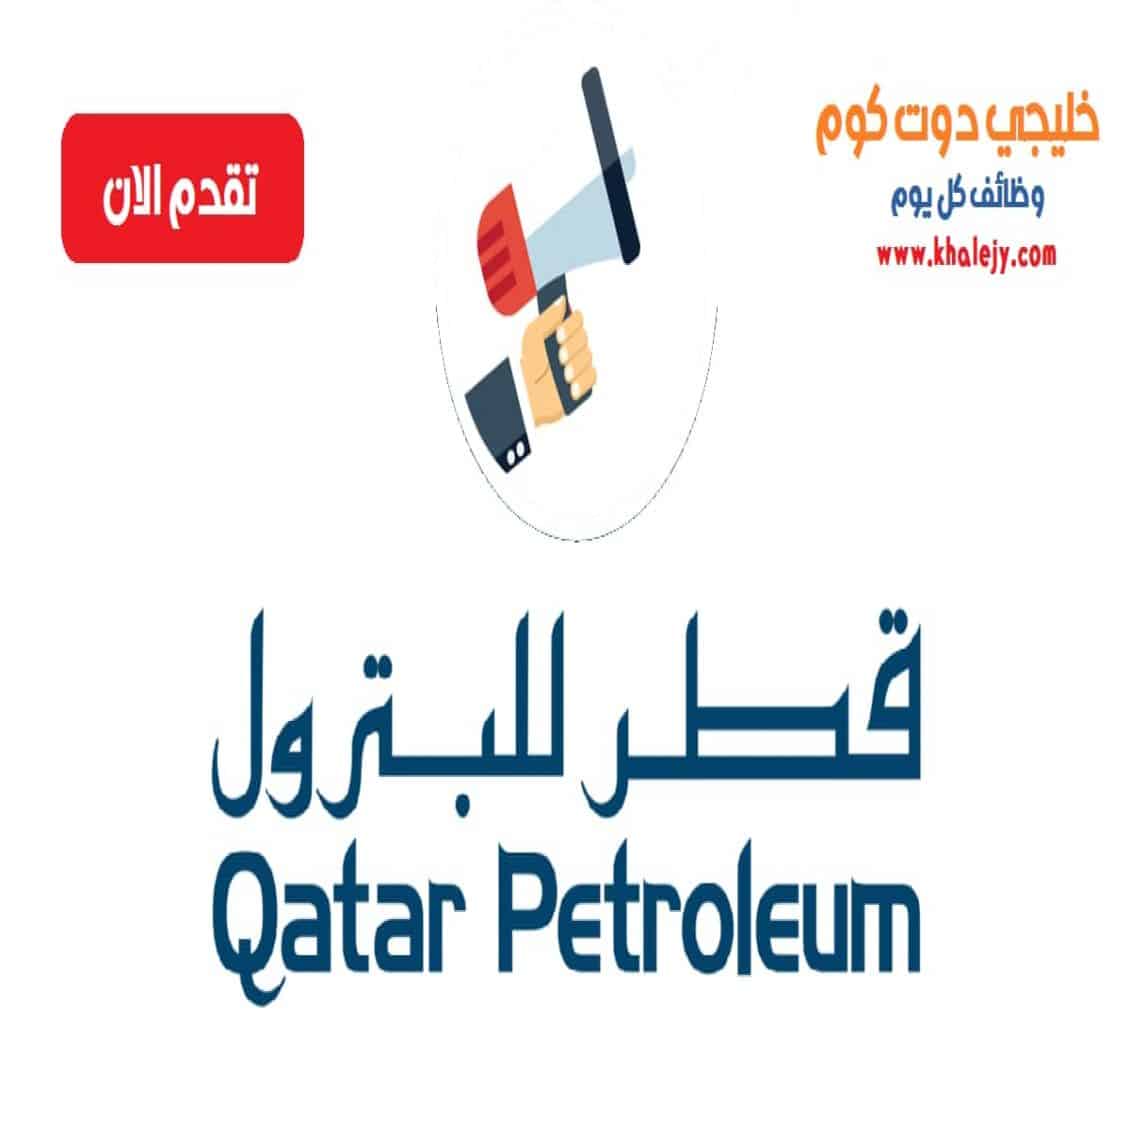 وظائف شركة قطر للبترول للمواطنين والاجانب